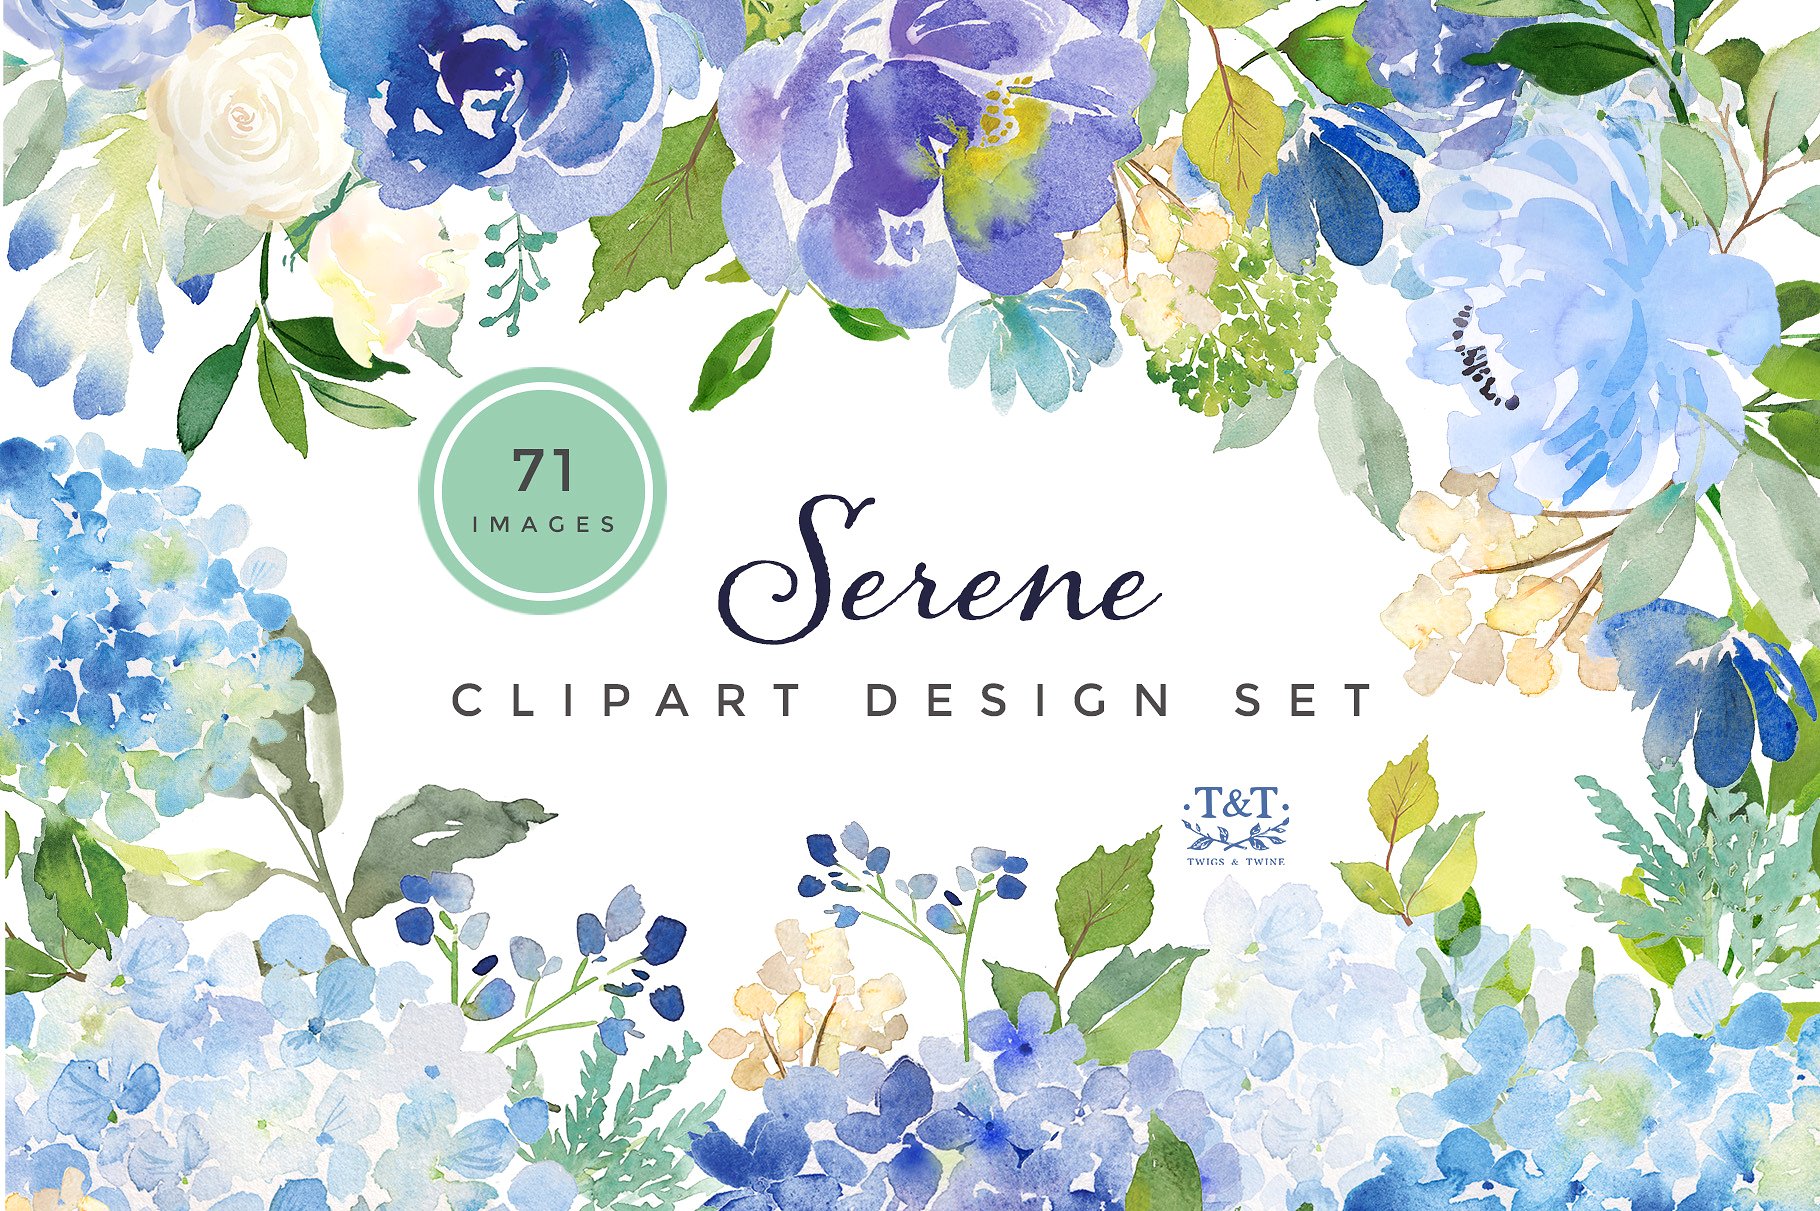 蓝色绣球花/牡丹和玫瑰的花卉组合水彩剪贴画矢量素材 Sere